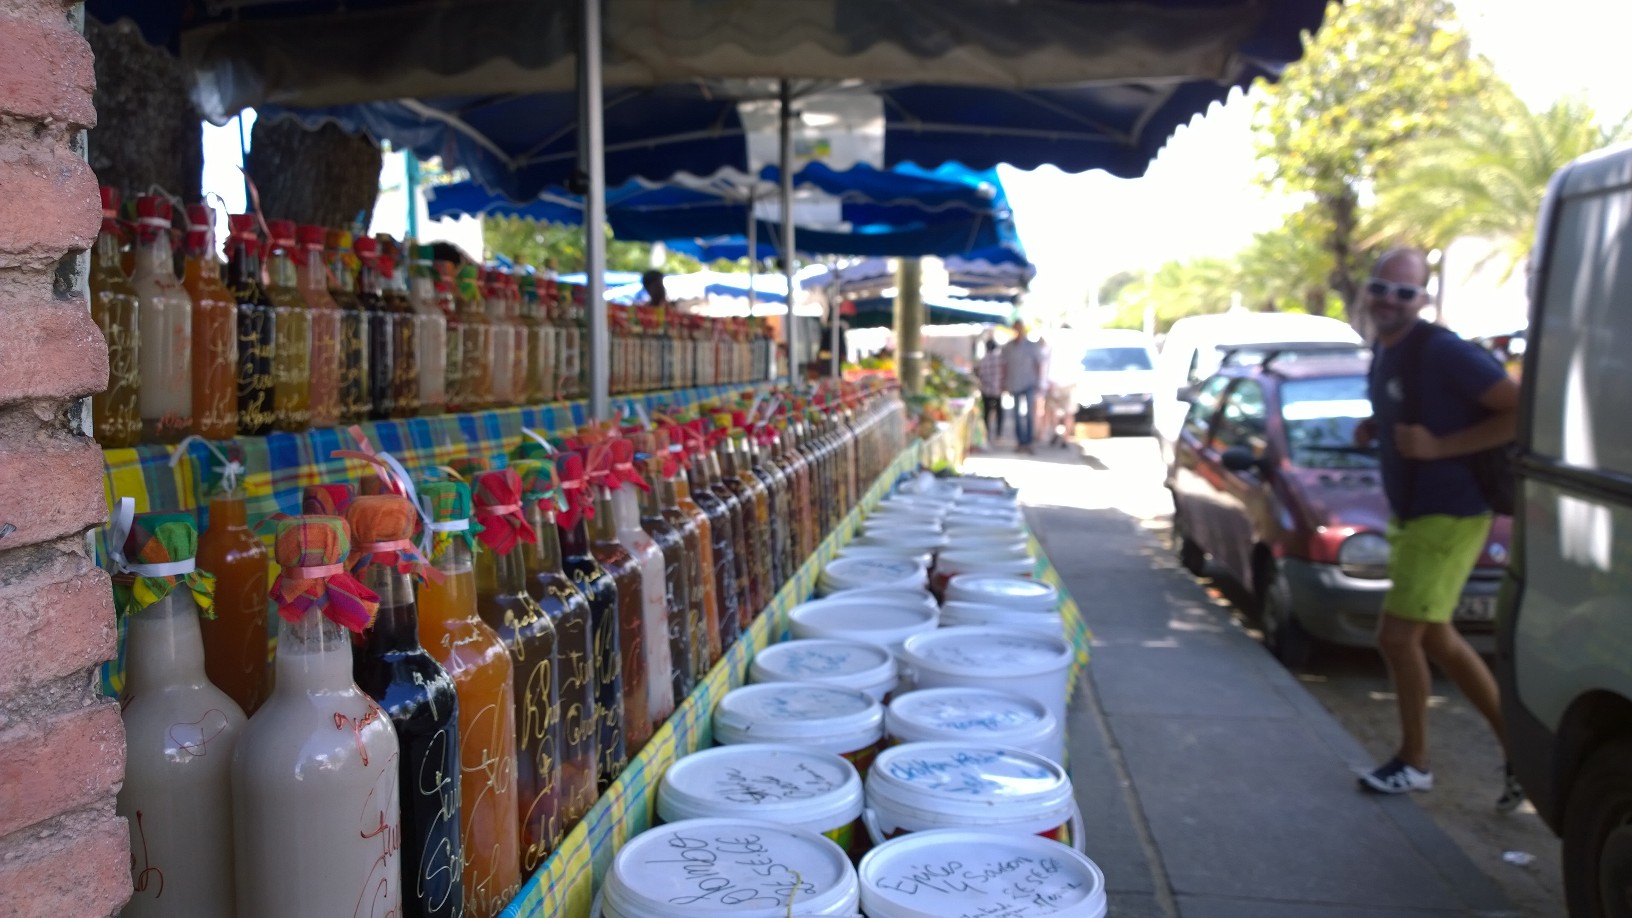 Rantaraitilla on myynnissä hedelmiä, mausteita ja kaiken moista turistikamaa.